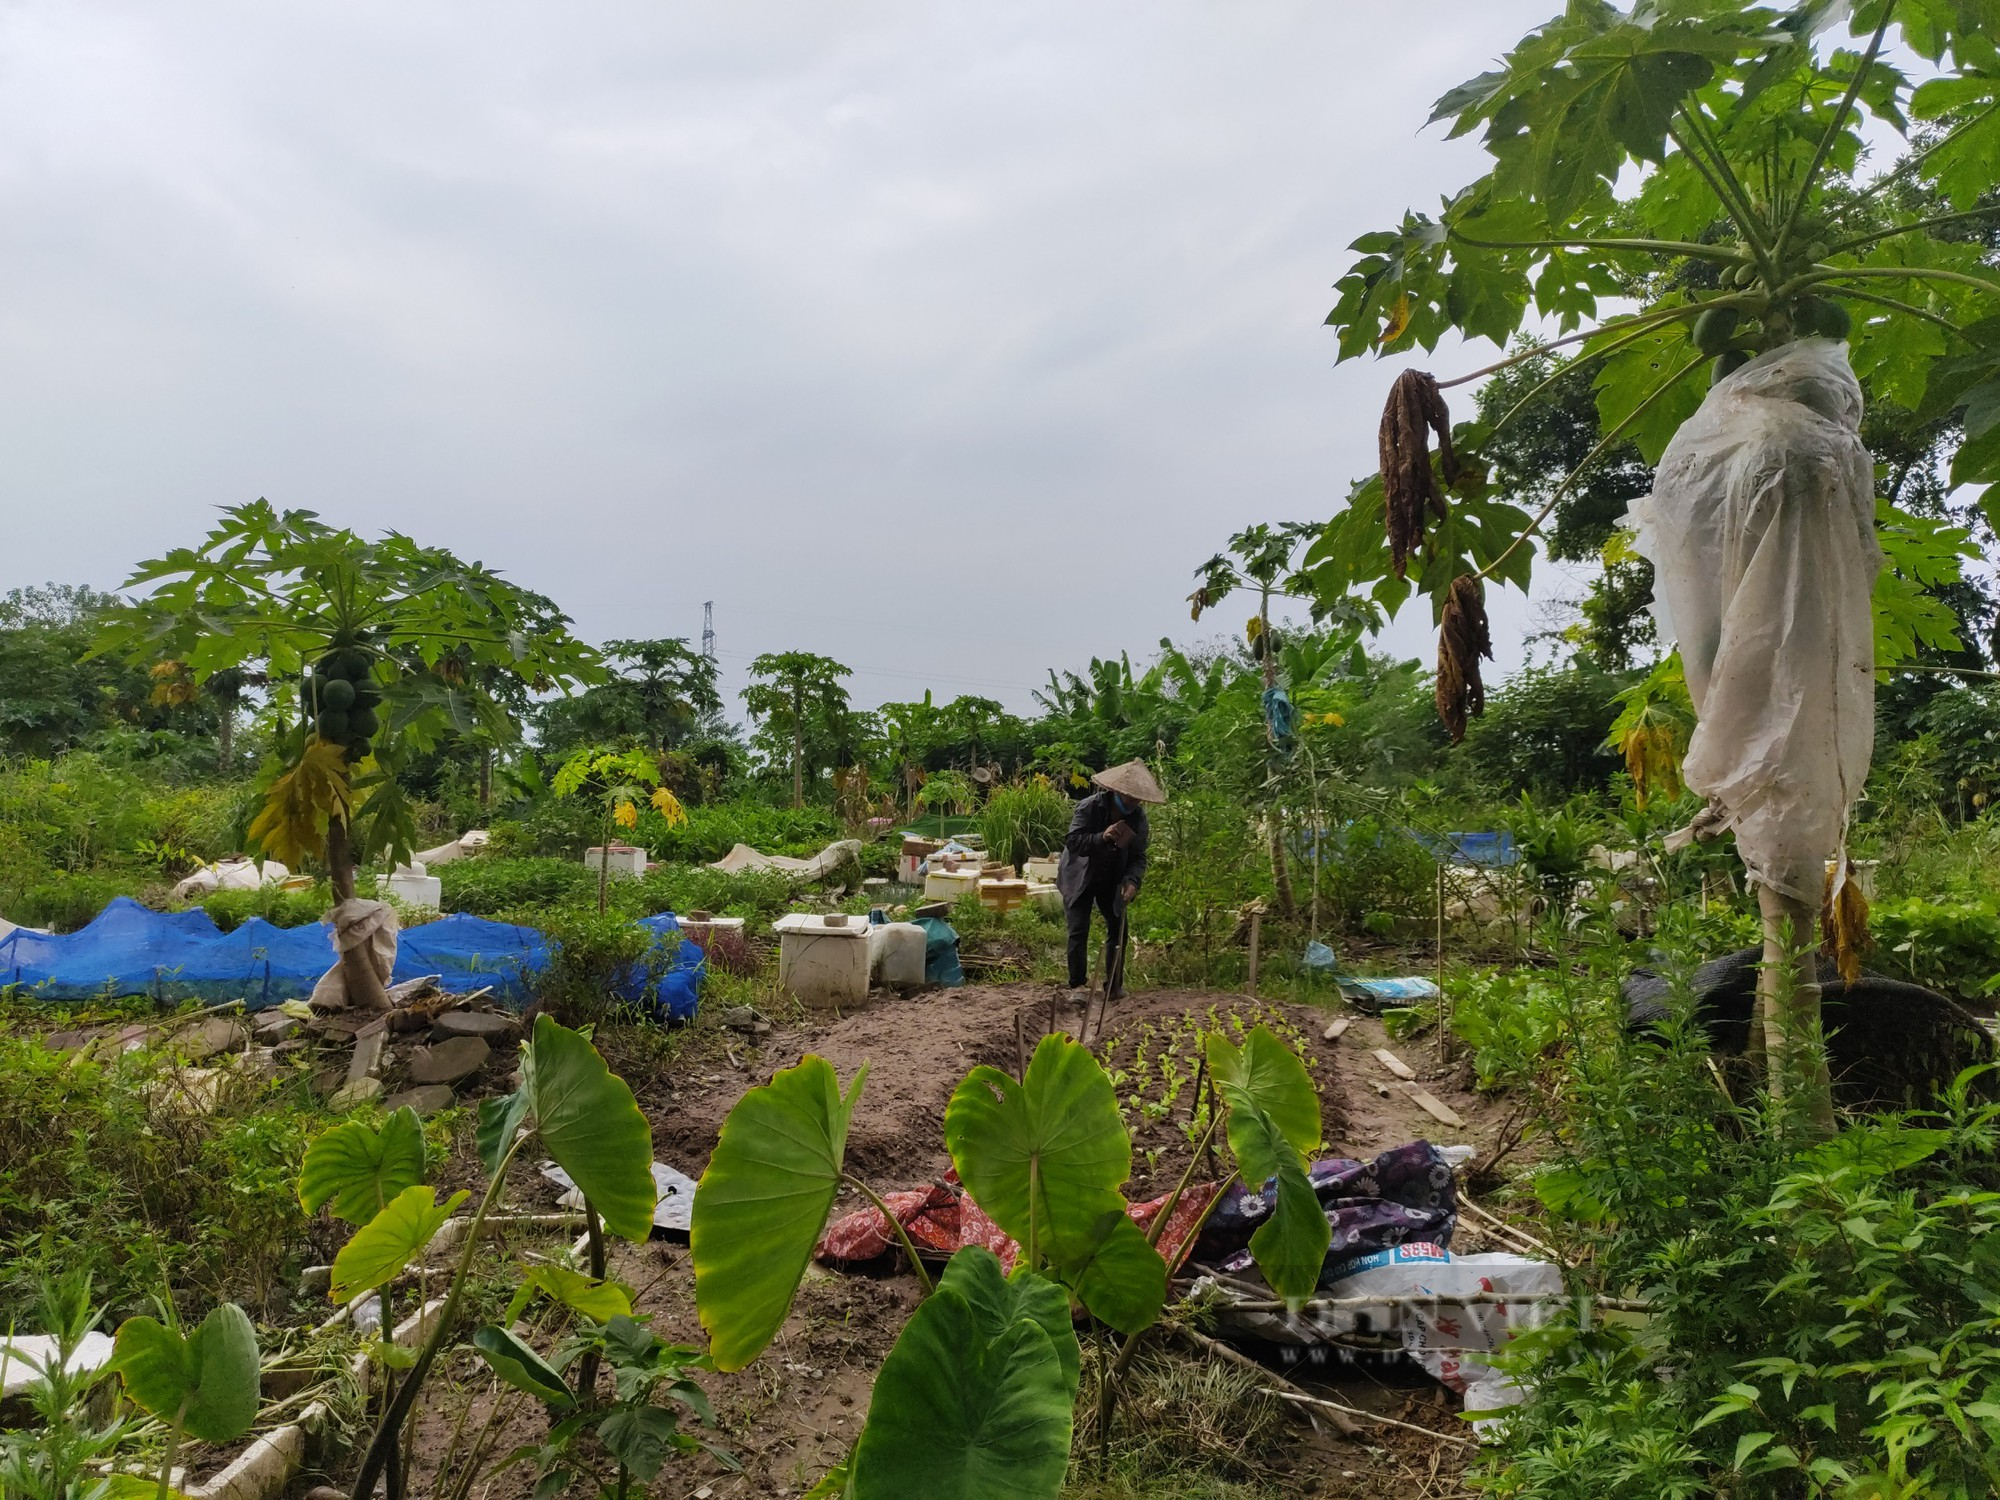 Sau phốt rau sạch rởm, dân chung cư ở Hà Nội phạt cỏ dại, khai hoang cuốc đất trồng rau - Ảnh 7.